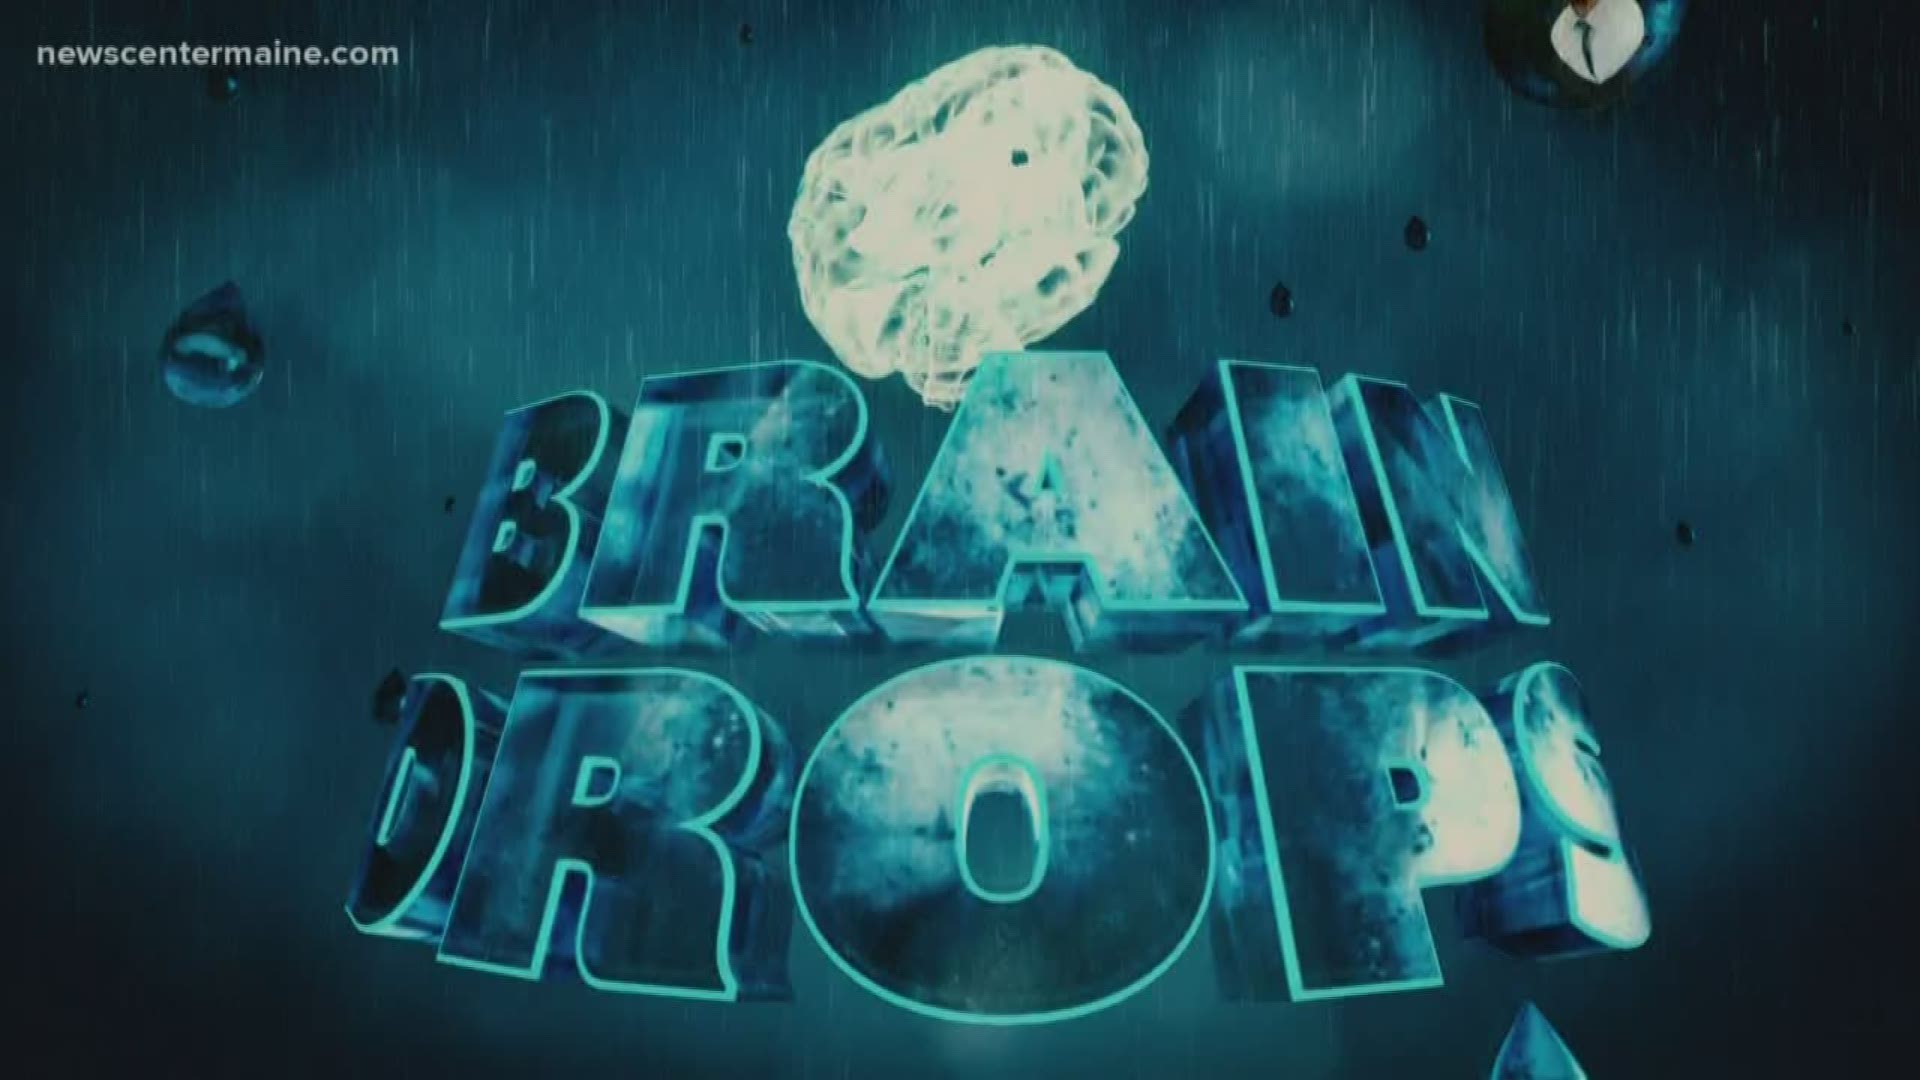 BrainDrops: Snowfall records